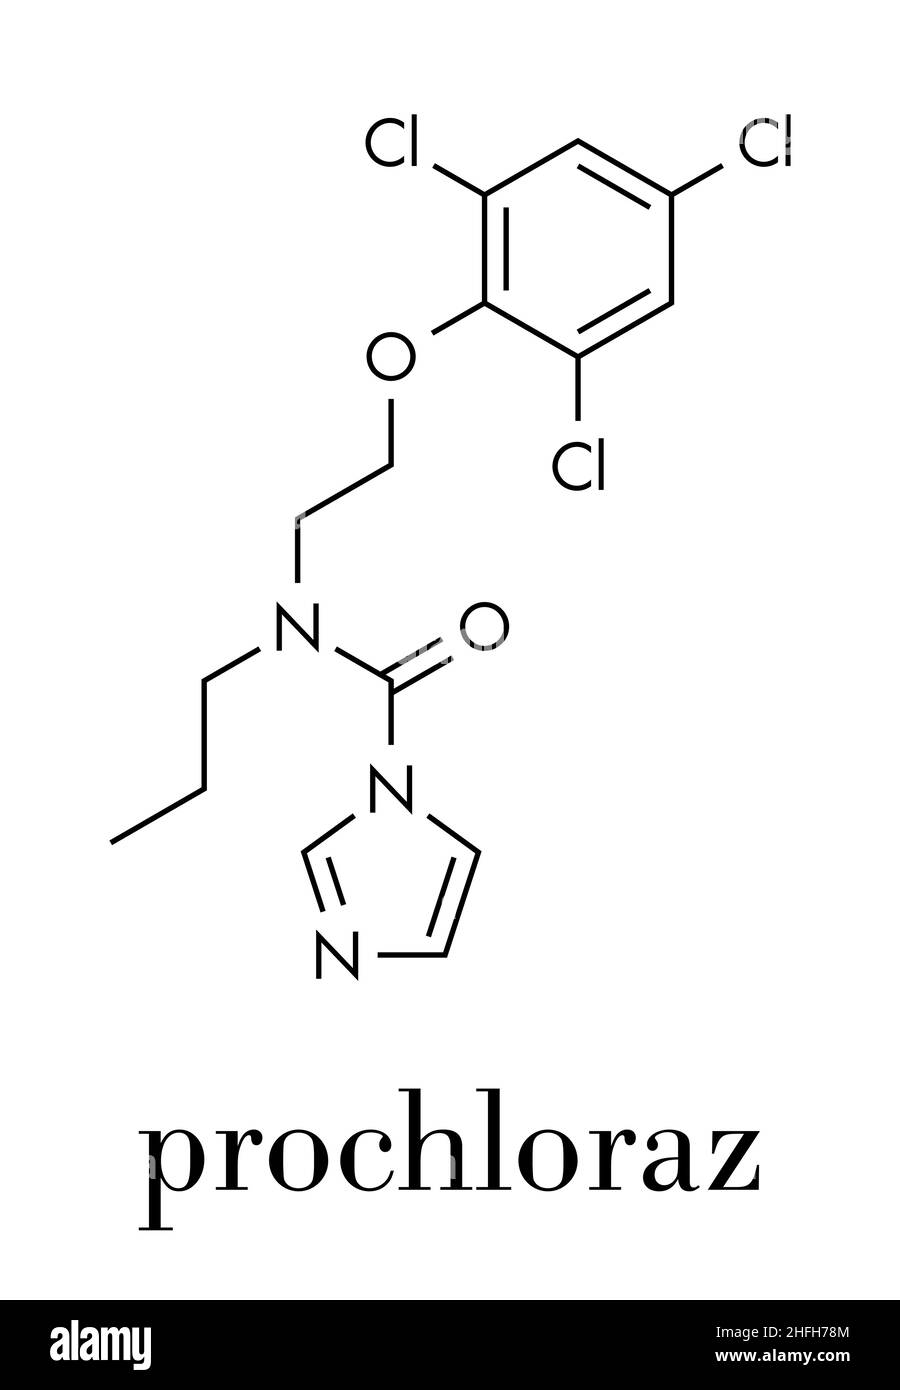 Prochloraz fungicide molecule. Skeletal formula. Stock Vector